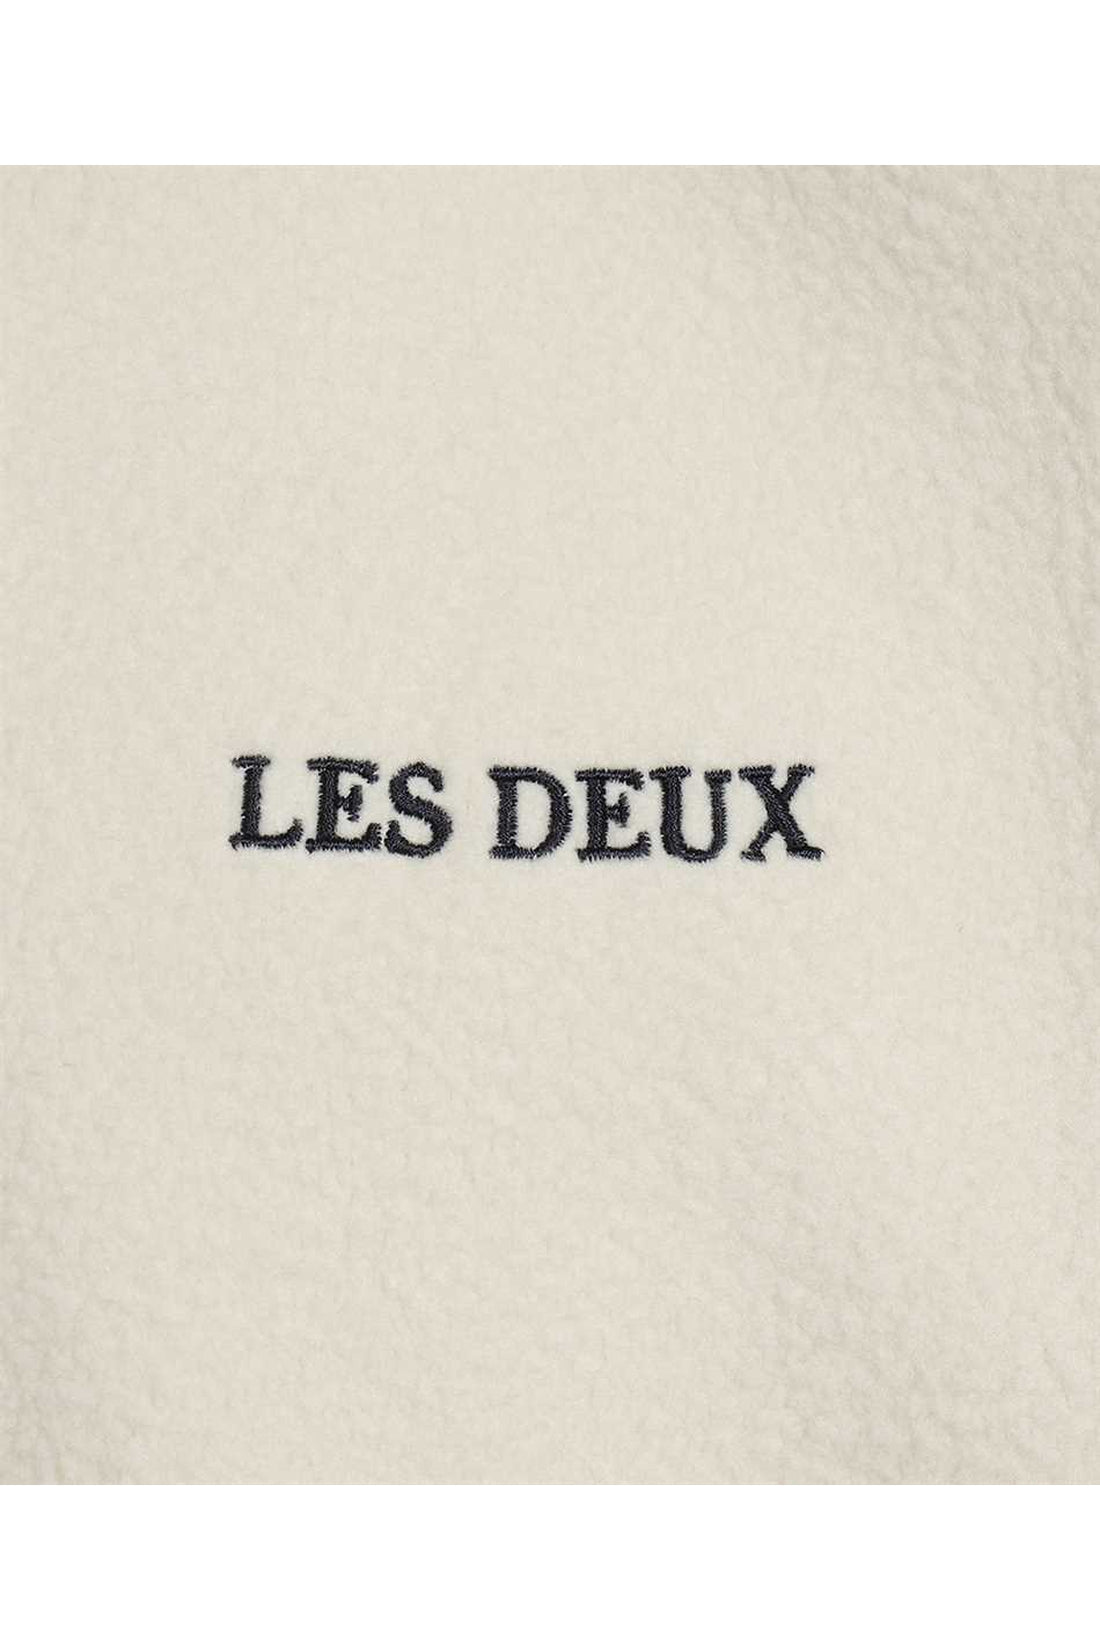 Les Deux-OUTLET-SALE-Embroidered logo crew-neck sweatshirt-ARCHIVIST